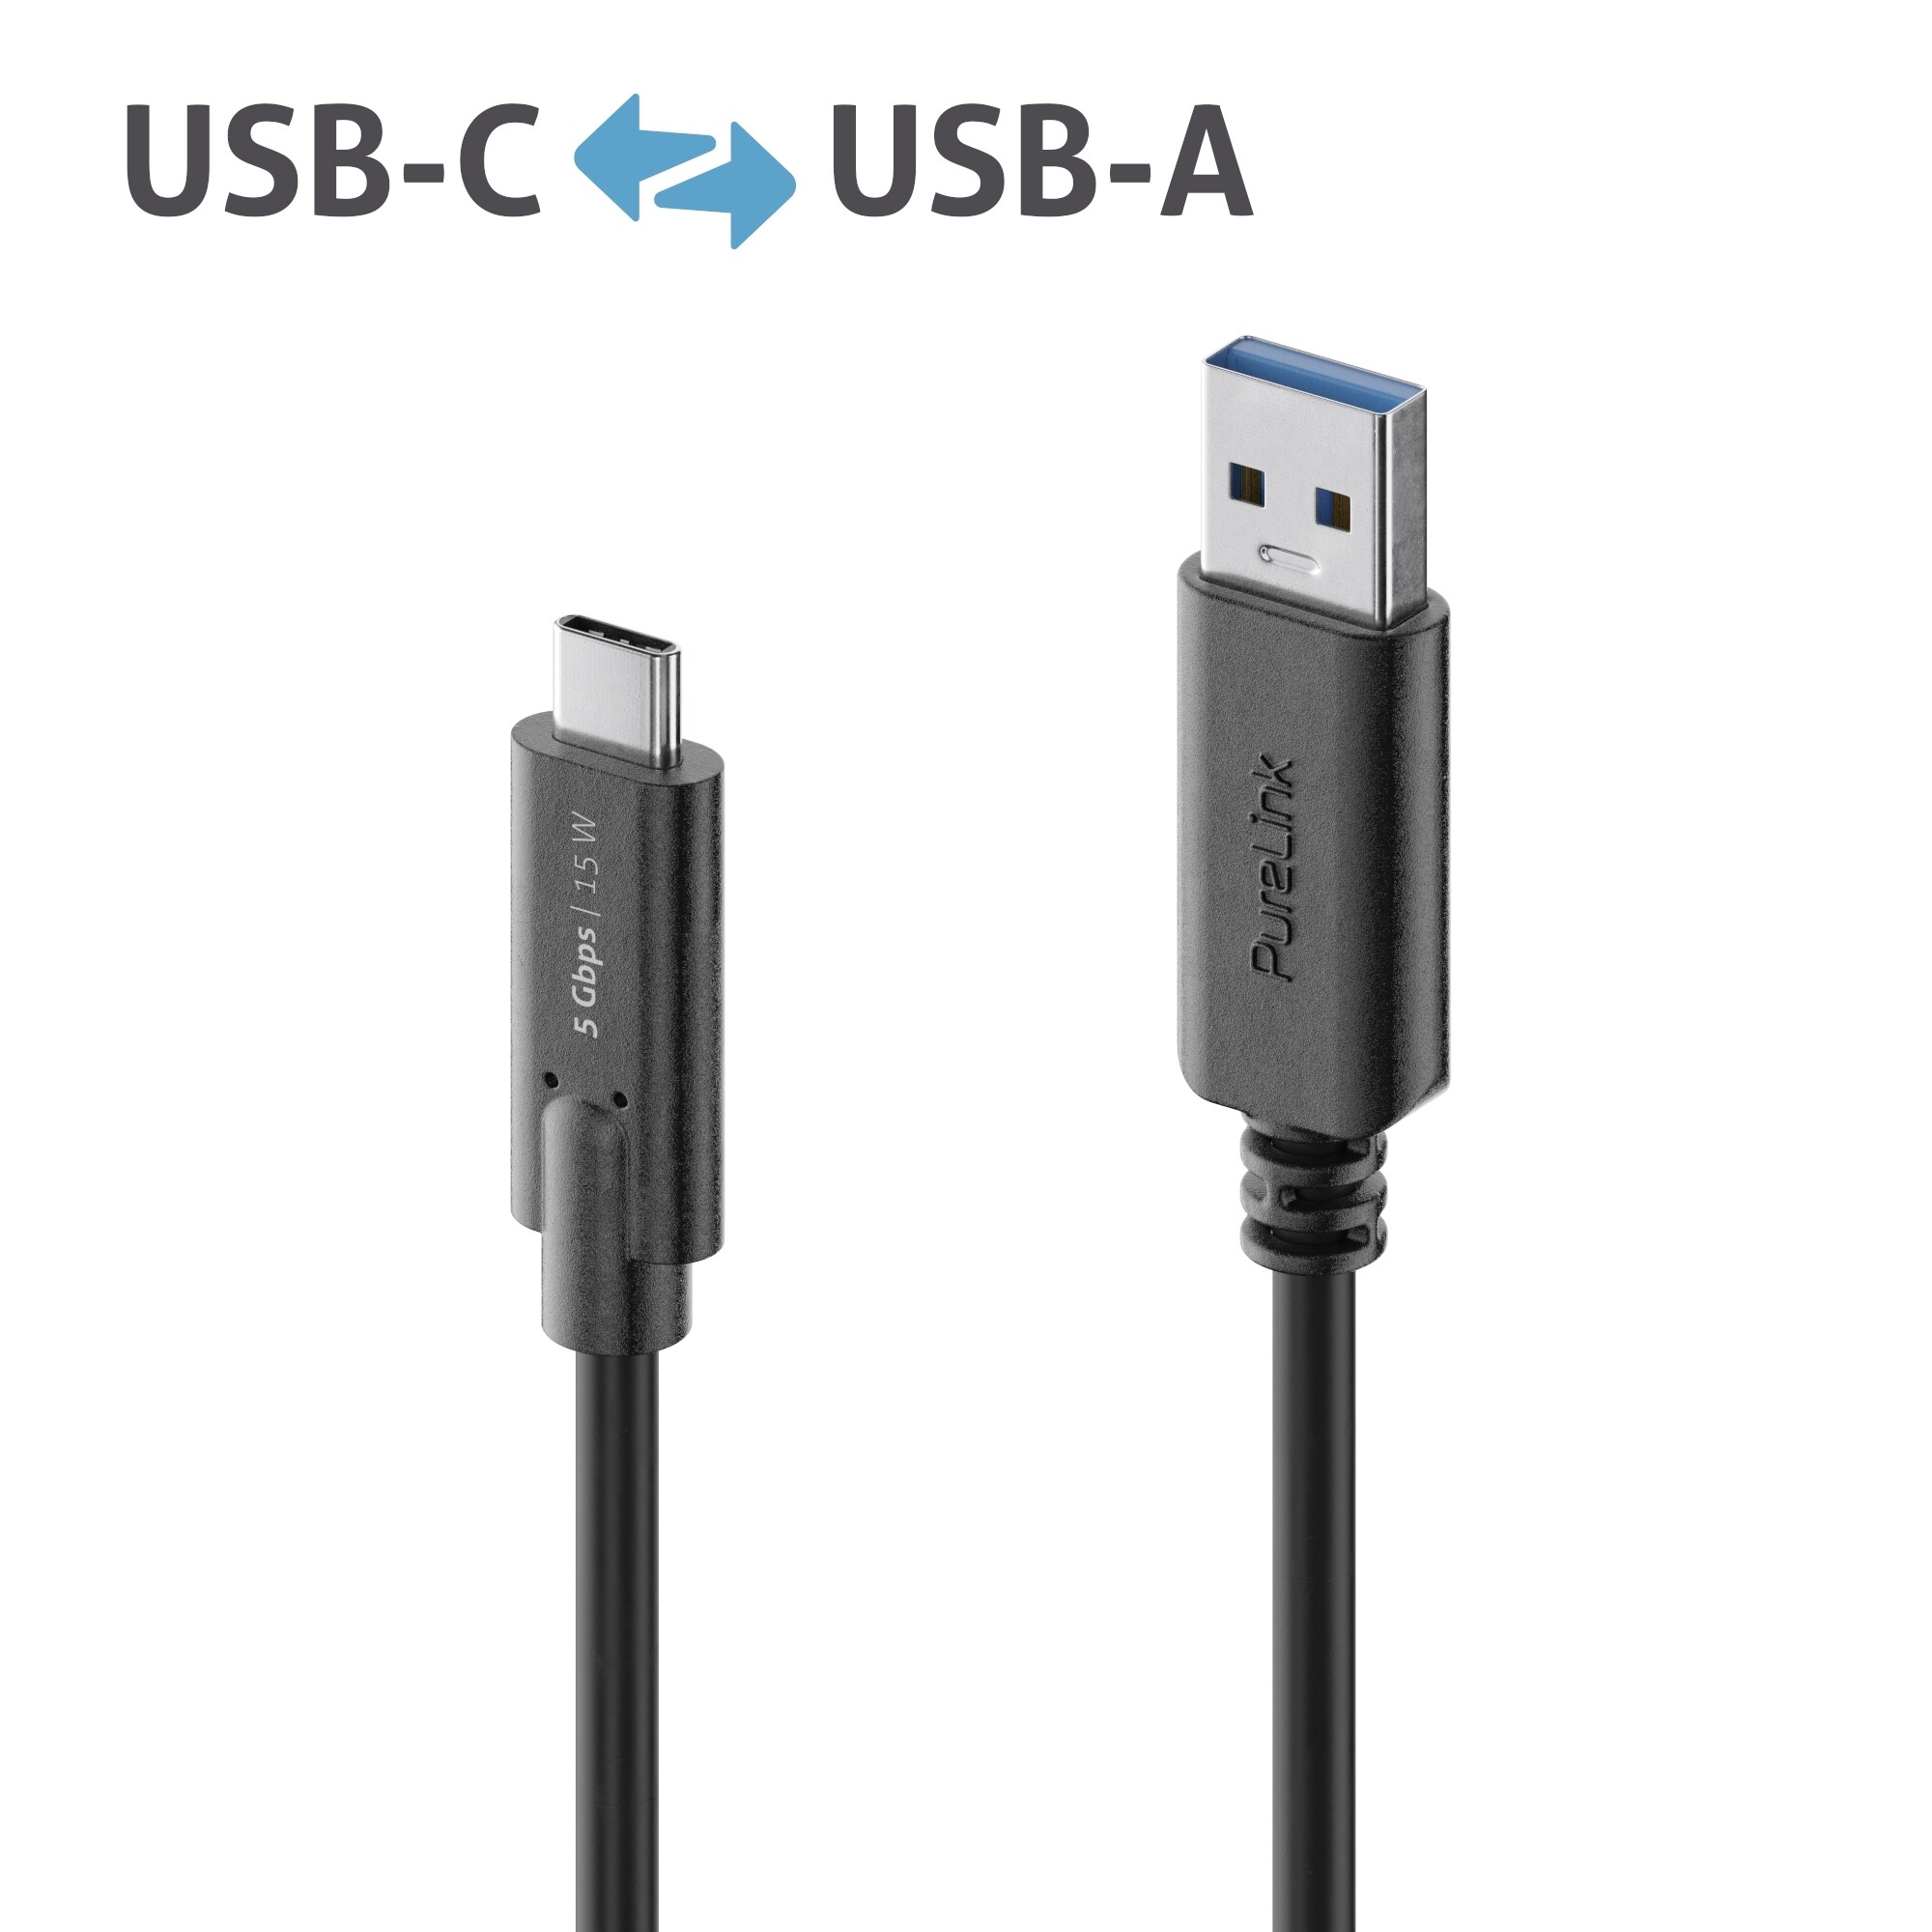 Purelink-IS2601-005-USB-C-auf-USB-A-Kabel-0-5m-schwarz